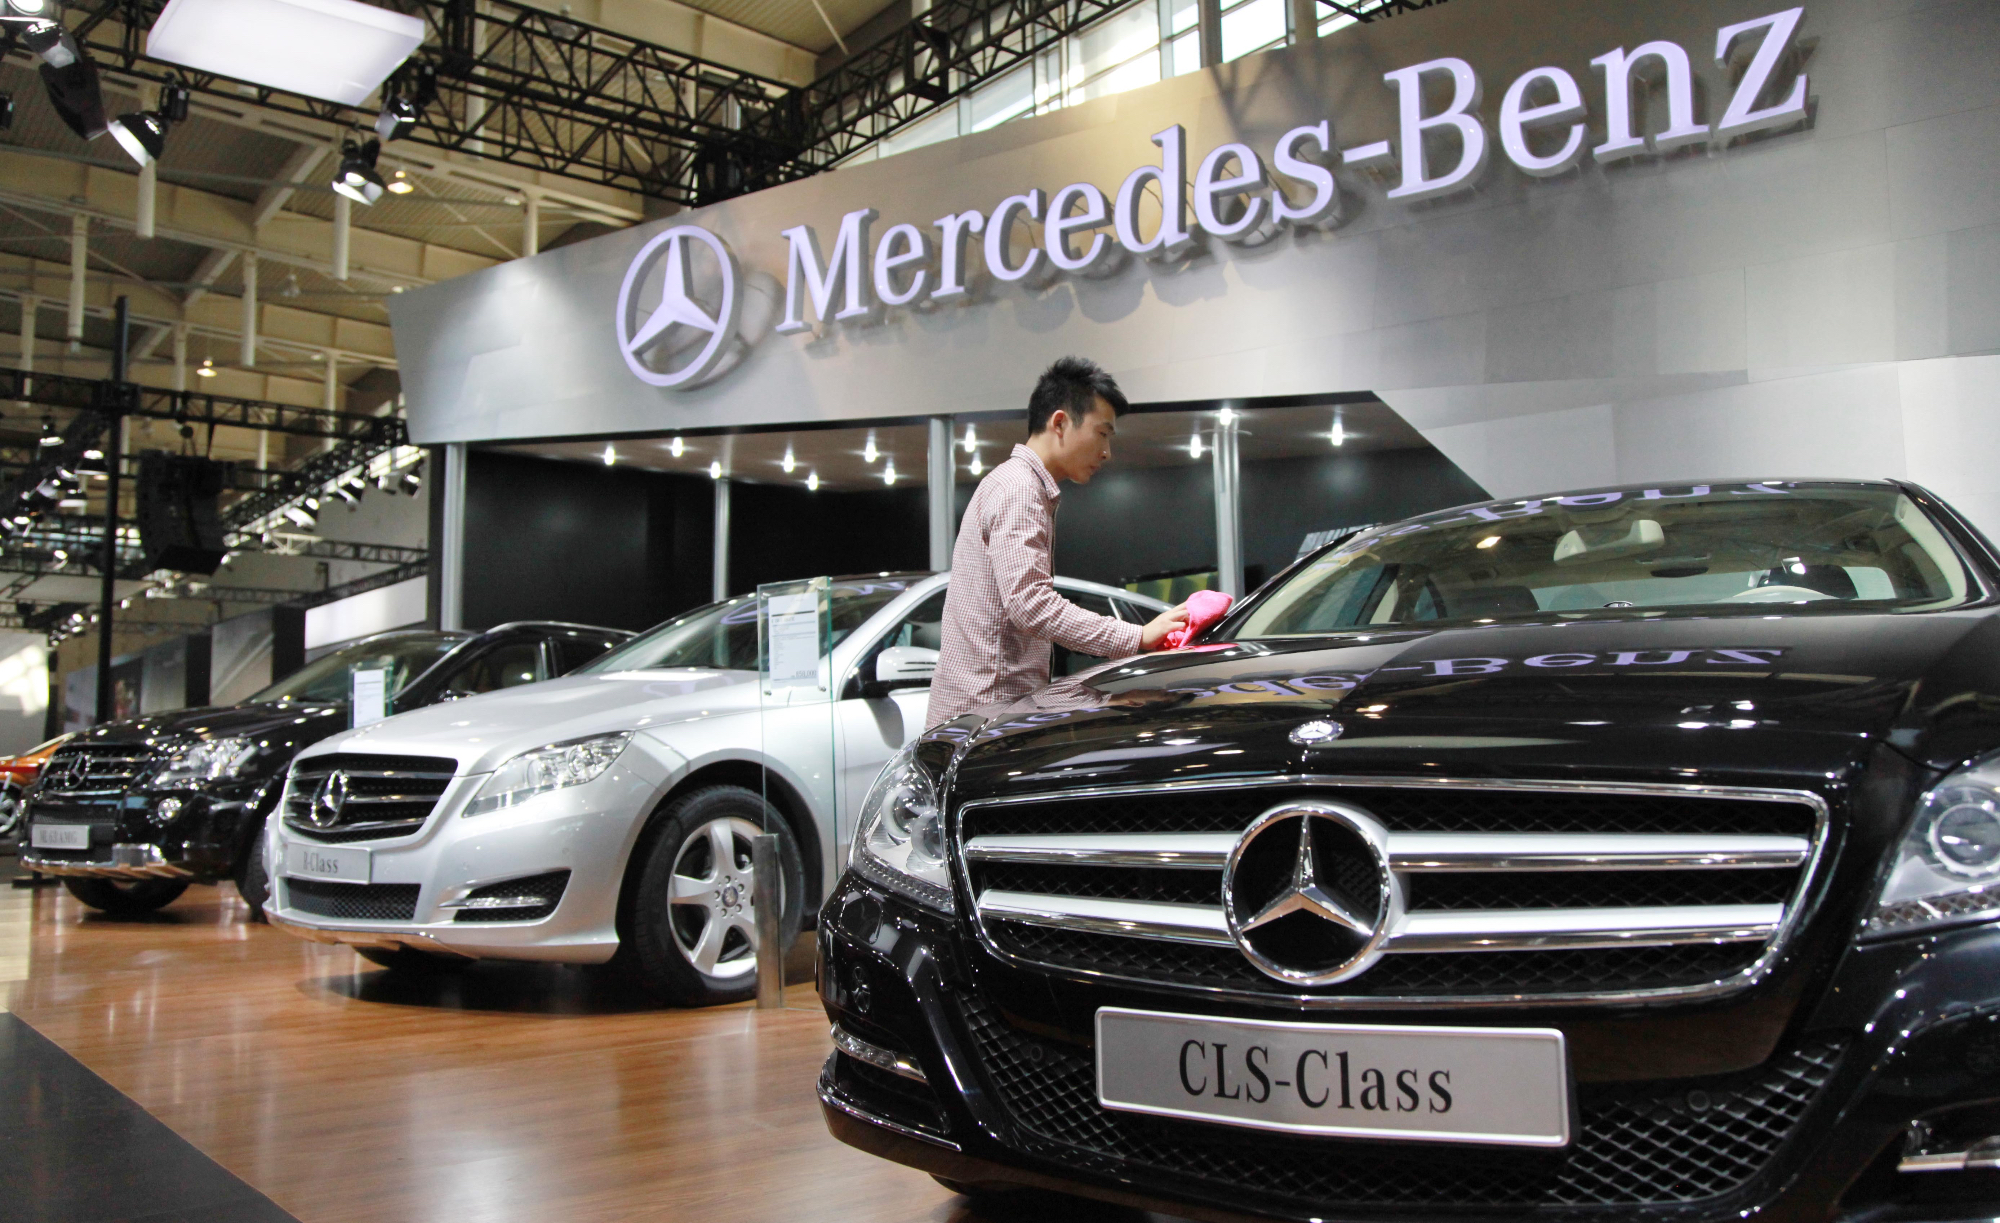 Mercedes Benz je sinonim za nemško izpopolnjenost